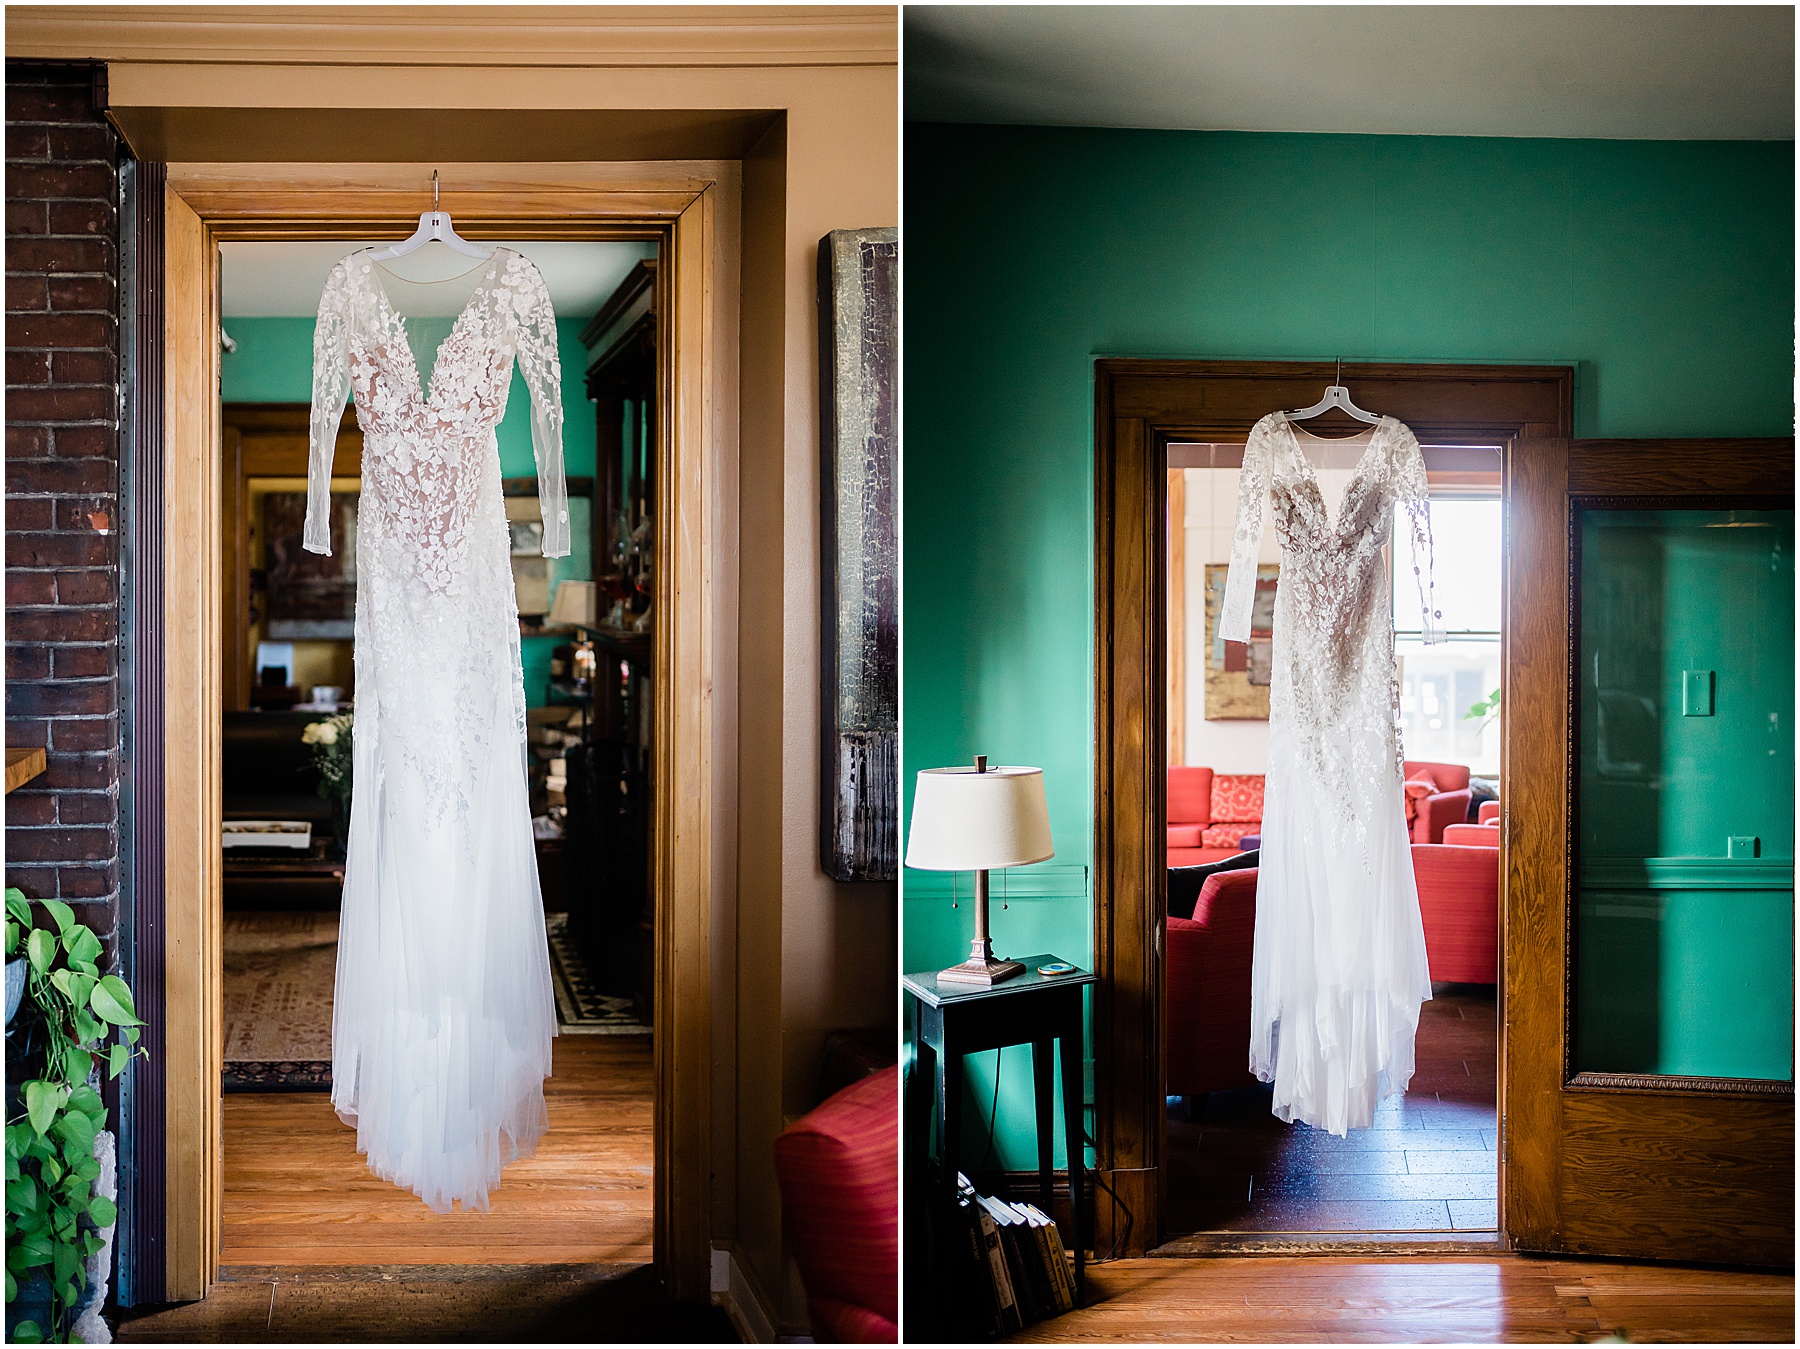 Fort Wayne wedding photographers capture bridal wedding dress hanging before ceremony